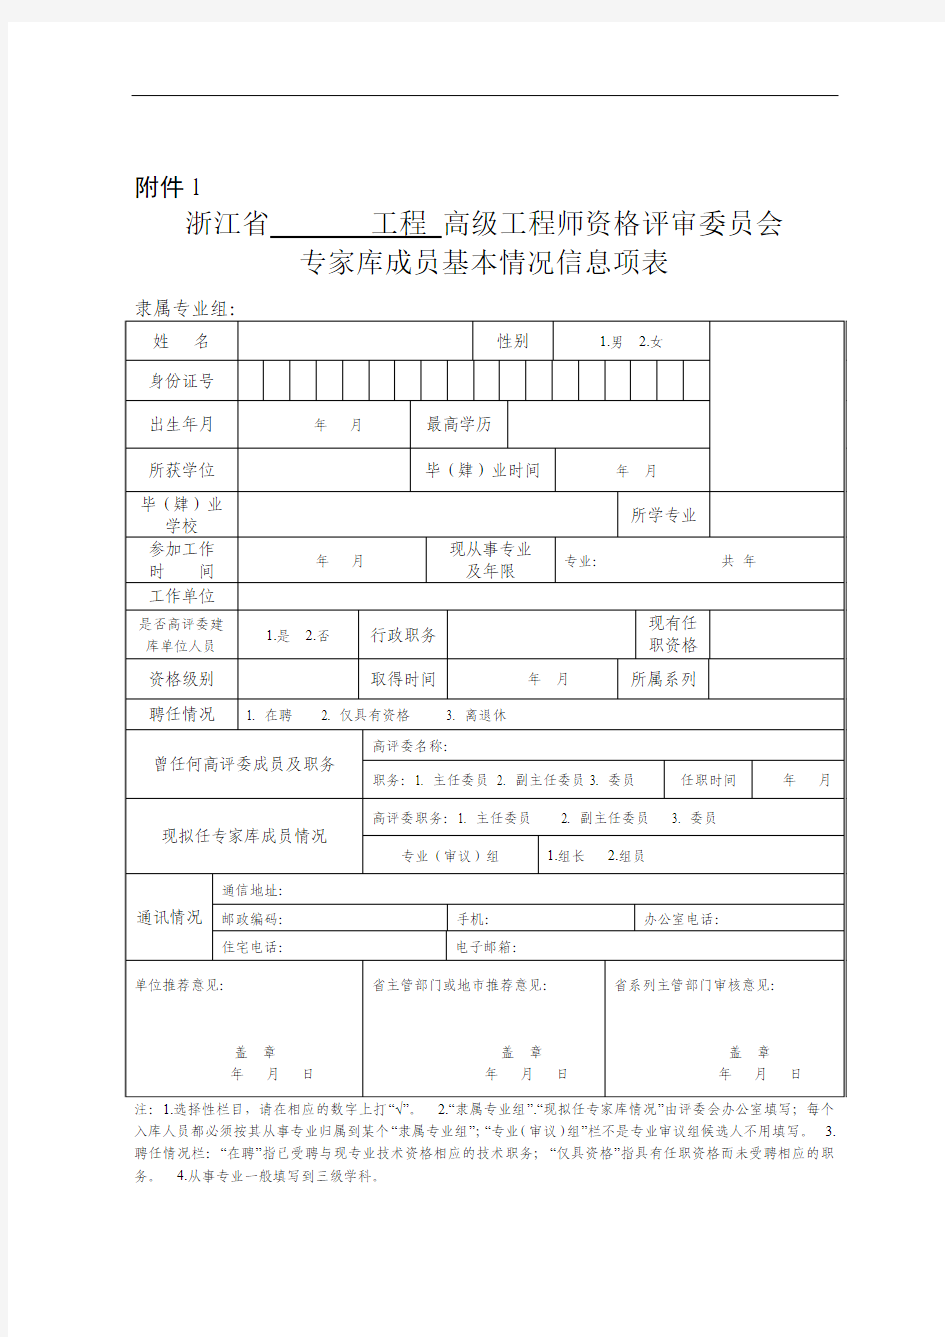 浙江省工程高级工程师资格评审委员会专家库成员基本情况信息项表